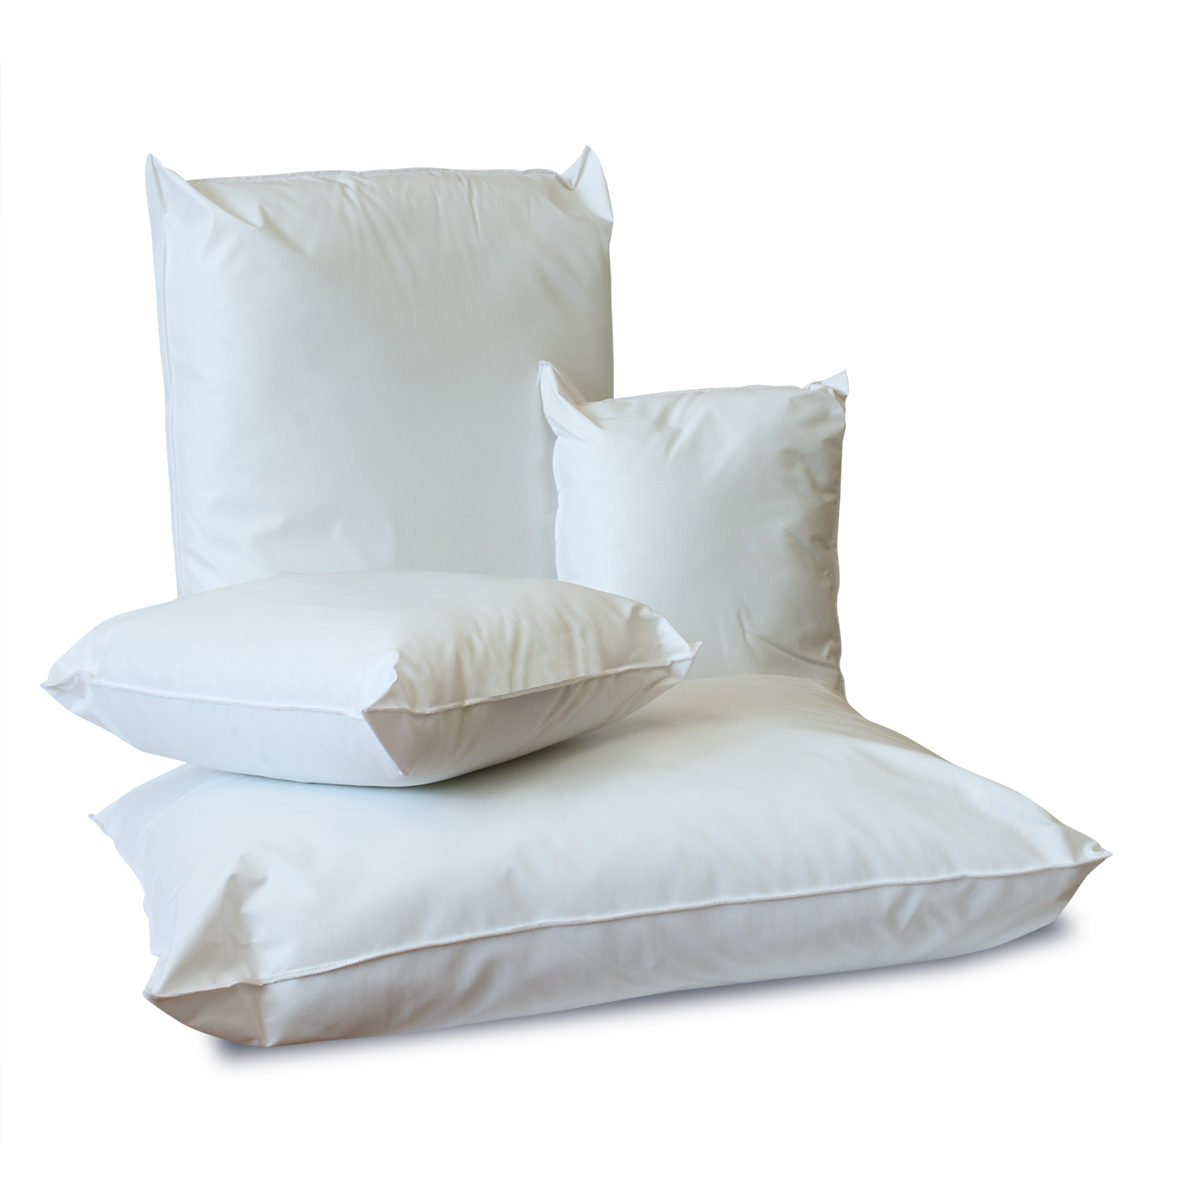 NYOrtho Endurance Pillows